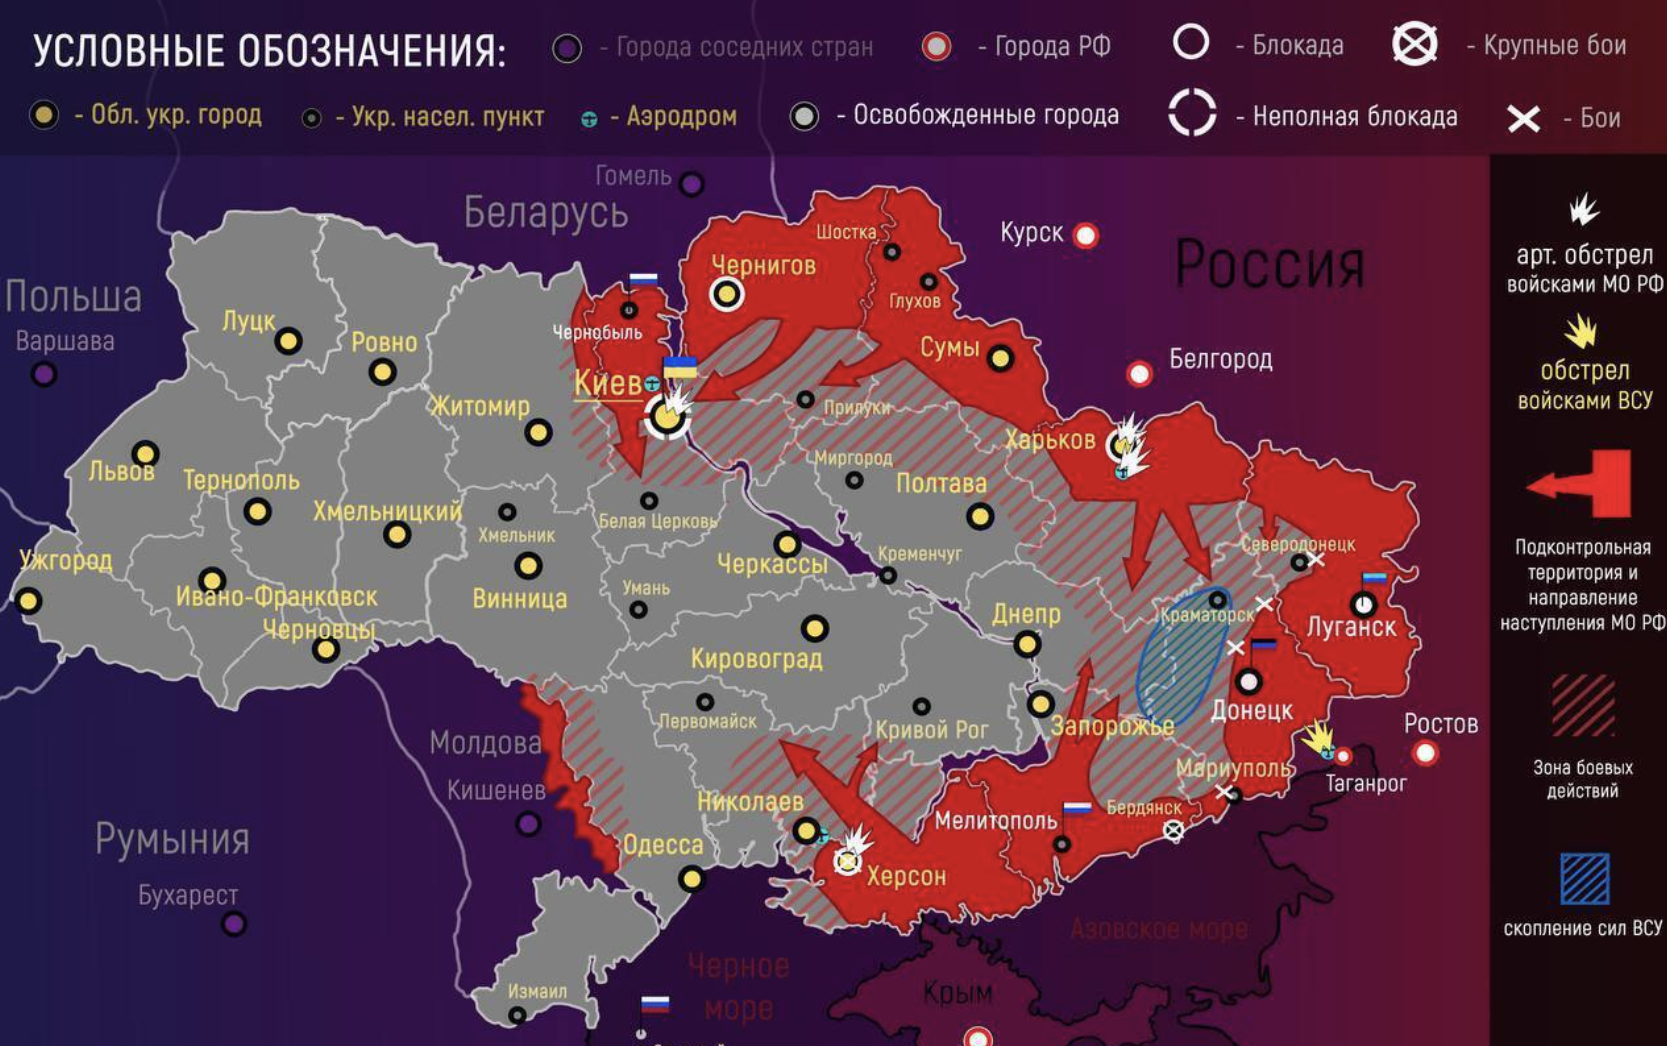 Продвижение россии на украине сегодня. Карта Украины с военными действиями сейчас 2022 сегодня. Карта боевых действий на Украине на 10.04.2022. Украинская карта войны на Украине. Карта военных действий на Украине сегодня сейчас 04.04.2022.